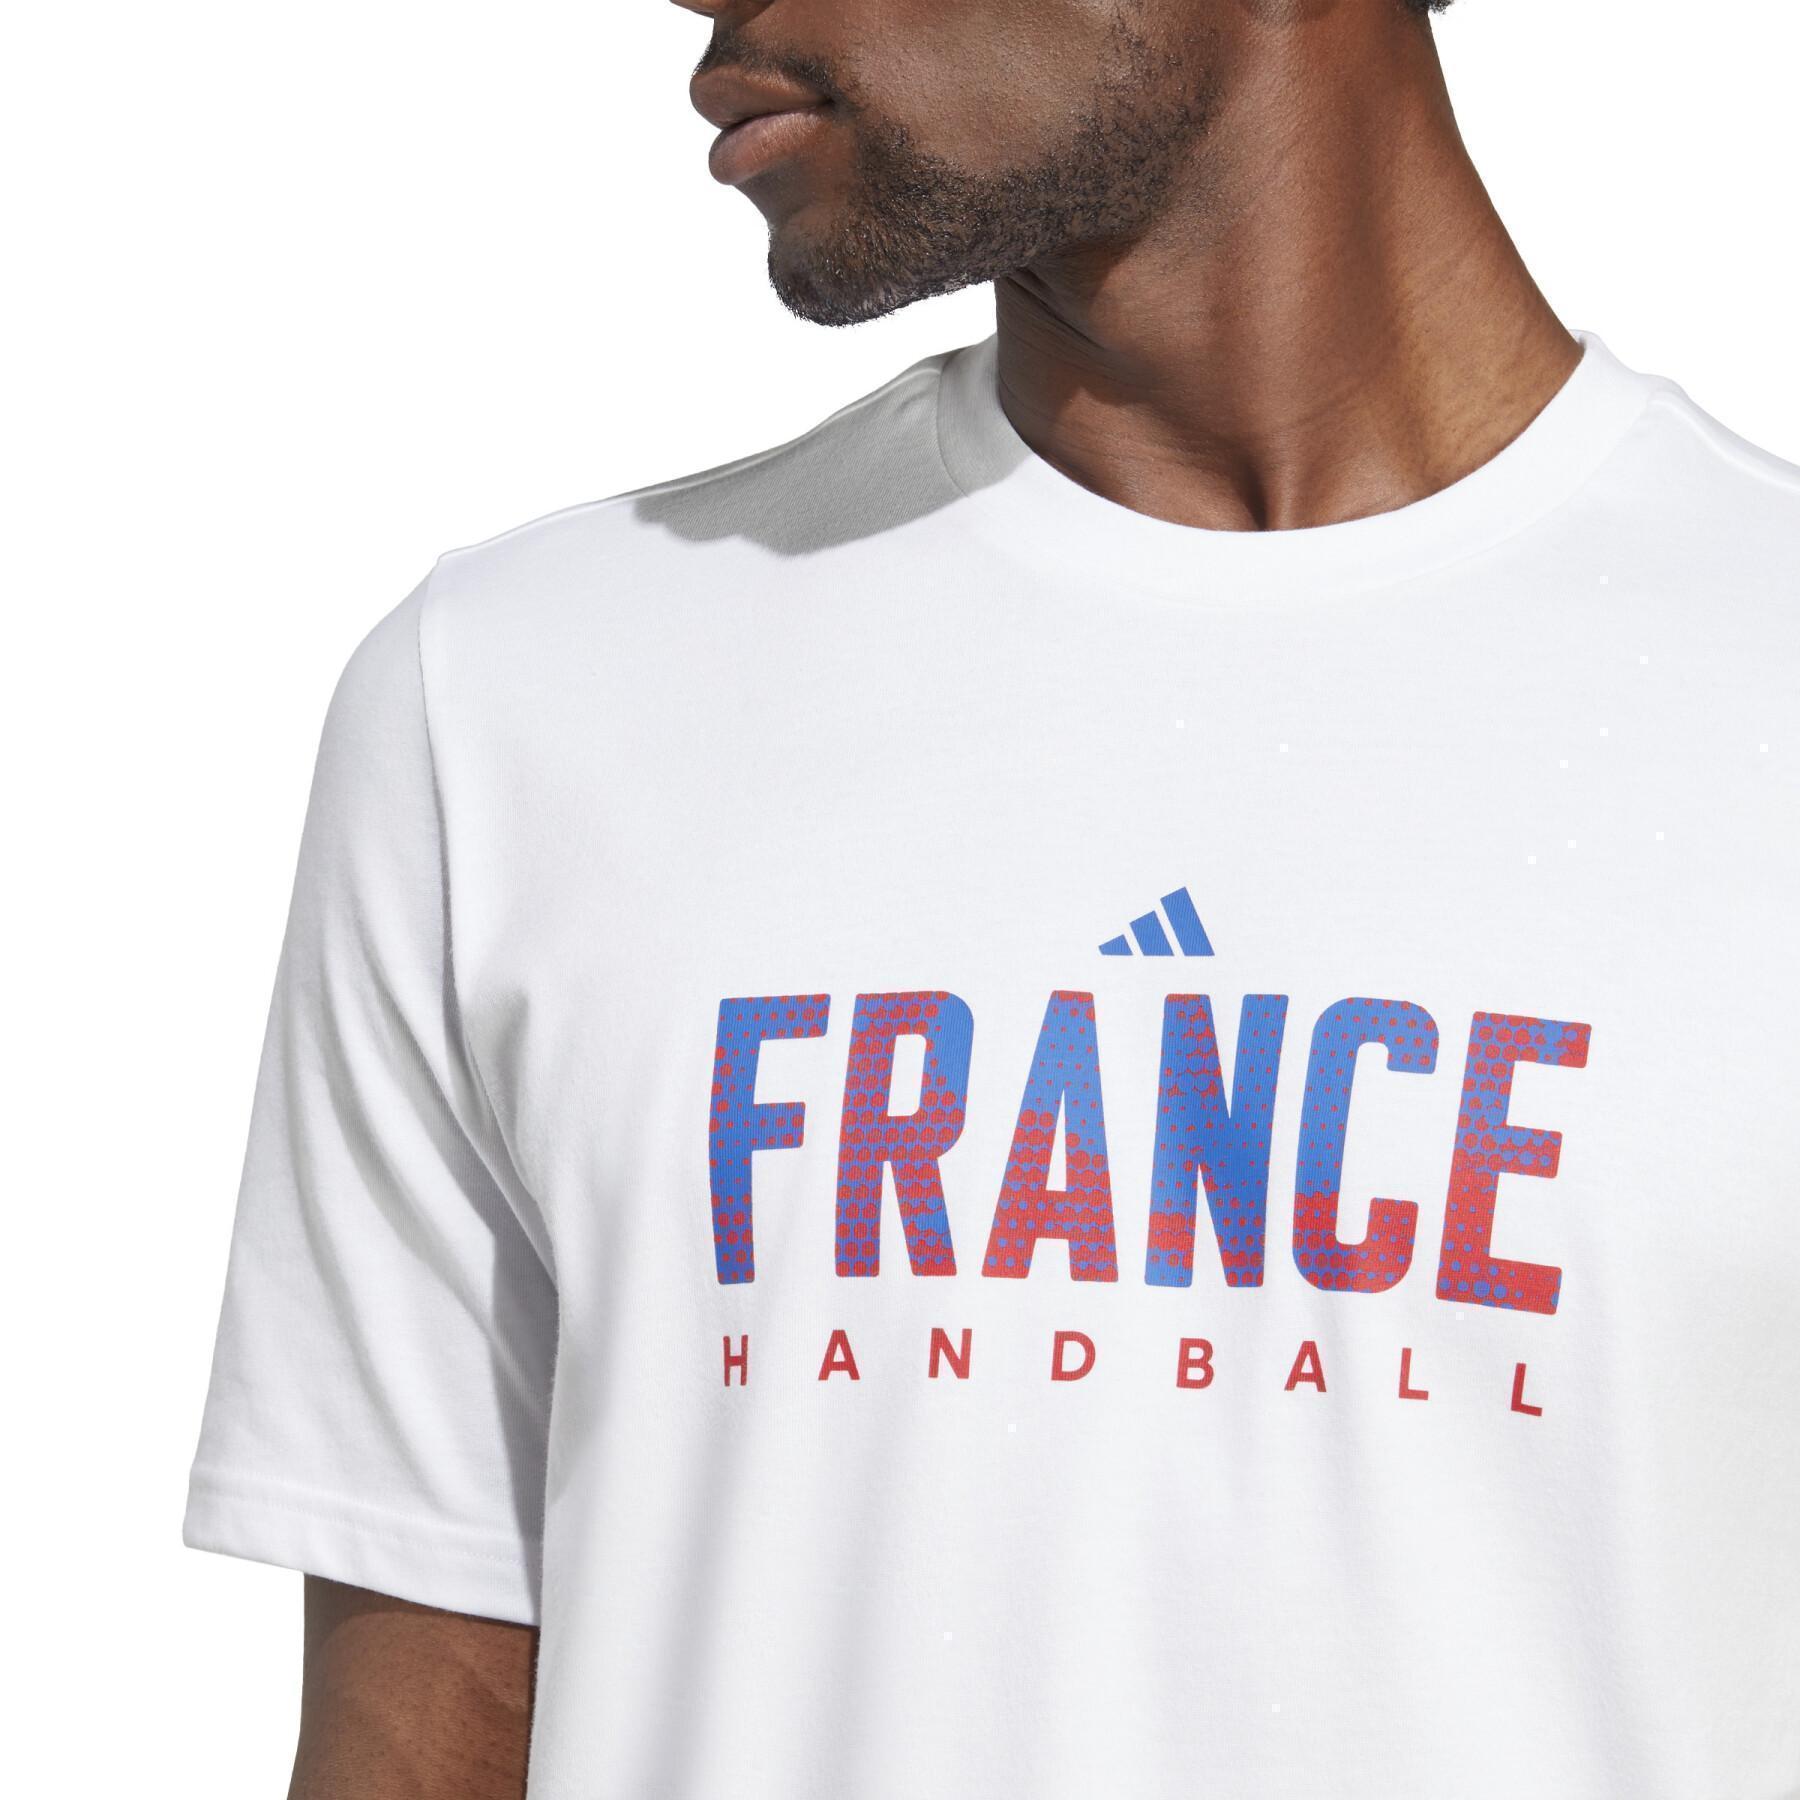 T-shirt Frankrijk Graphic 2022/23